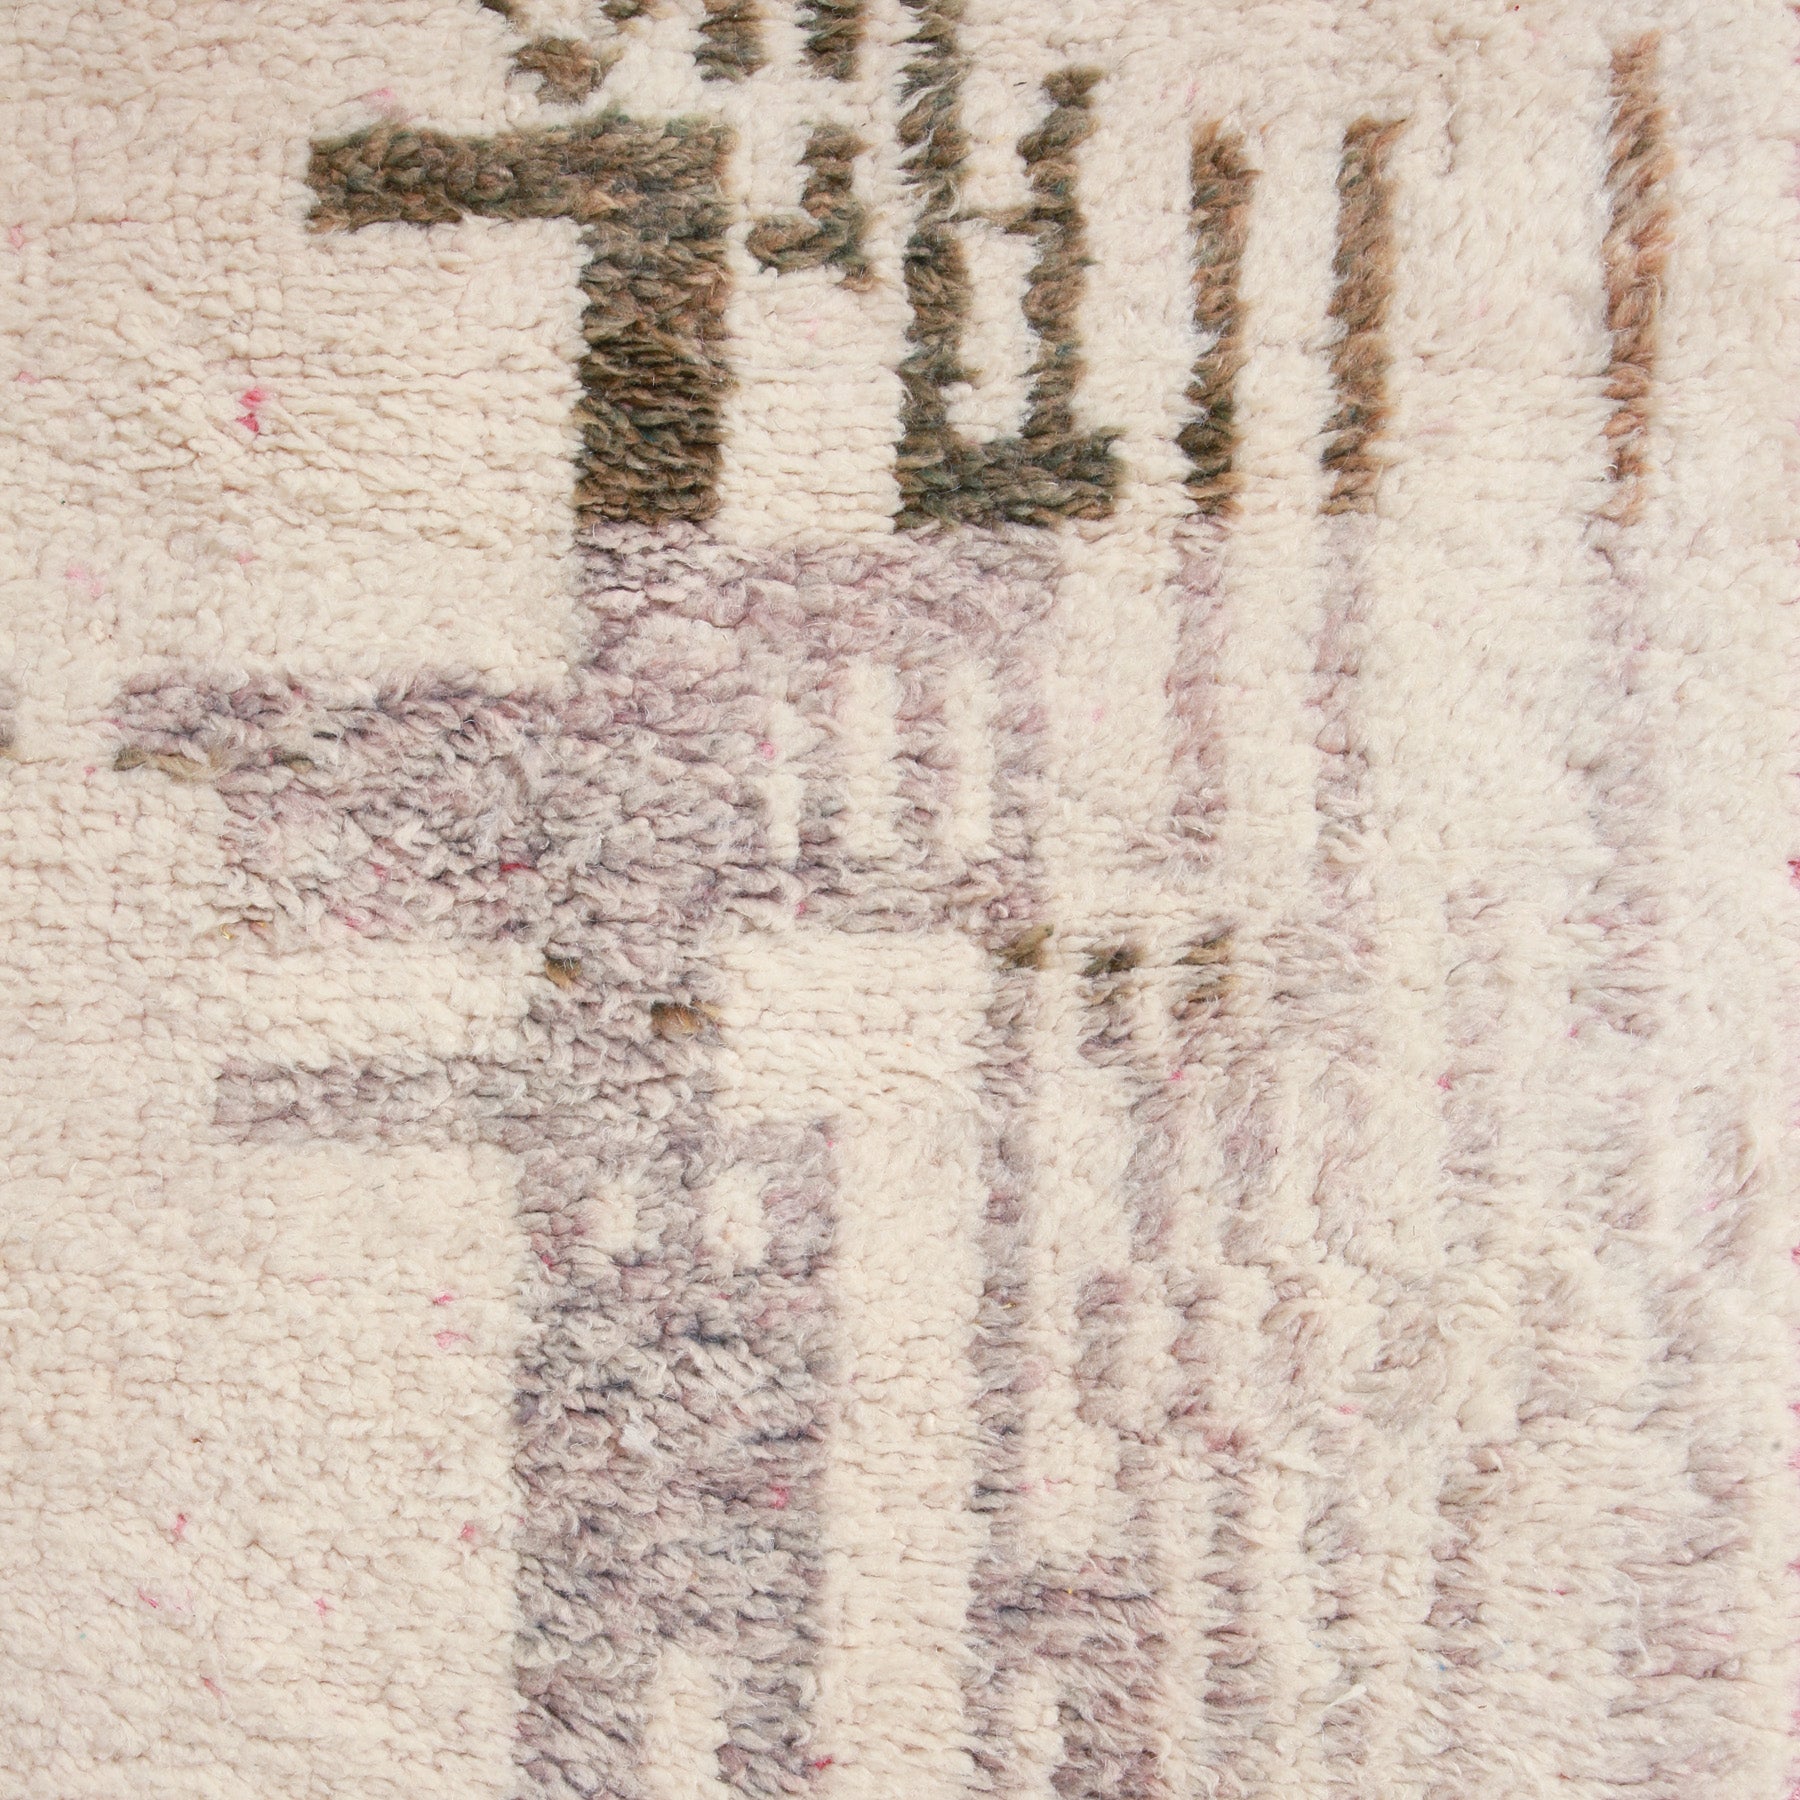 dettaglio del disegno astratto di una passatoia beni ourain